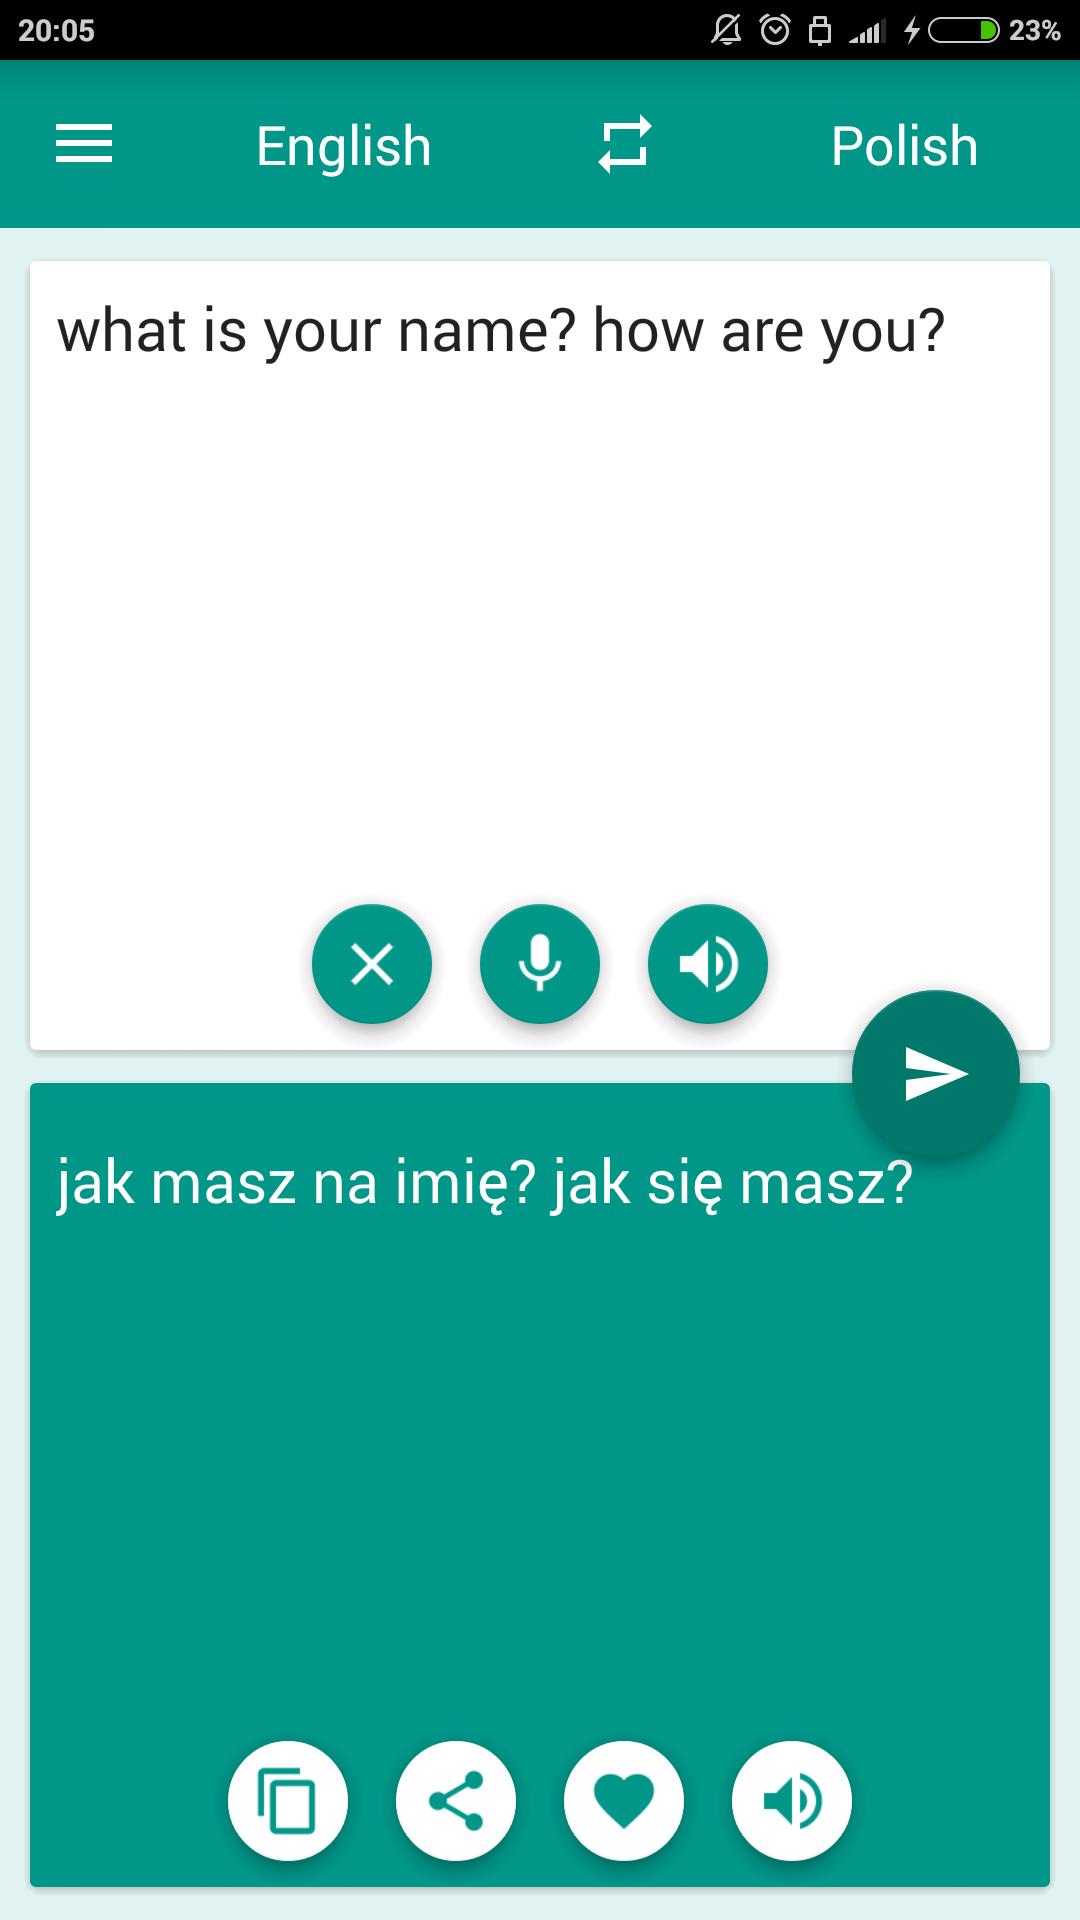 Tłumacz polsko angielski for Android - APK Download